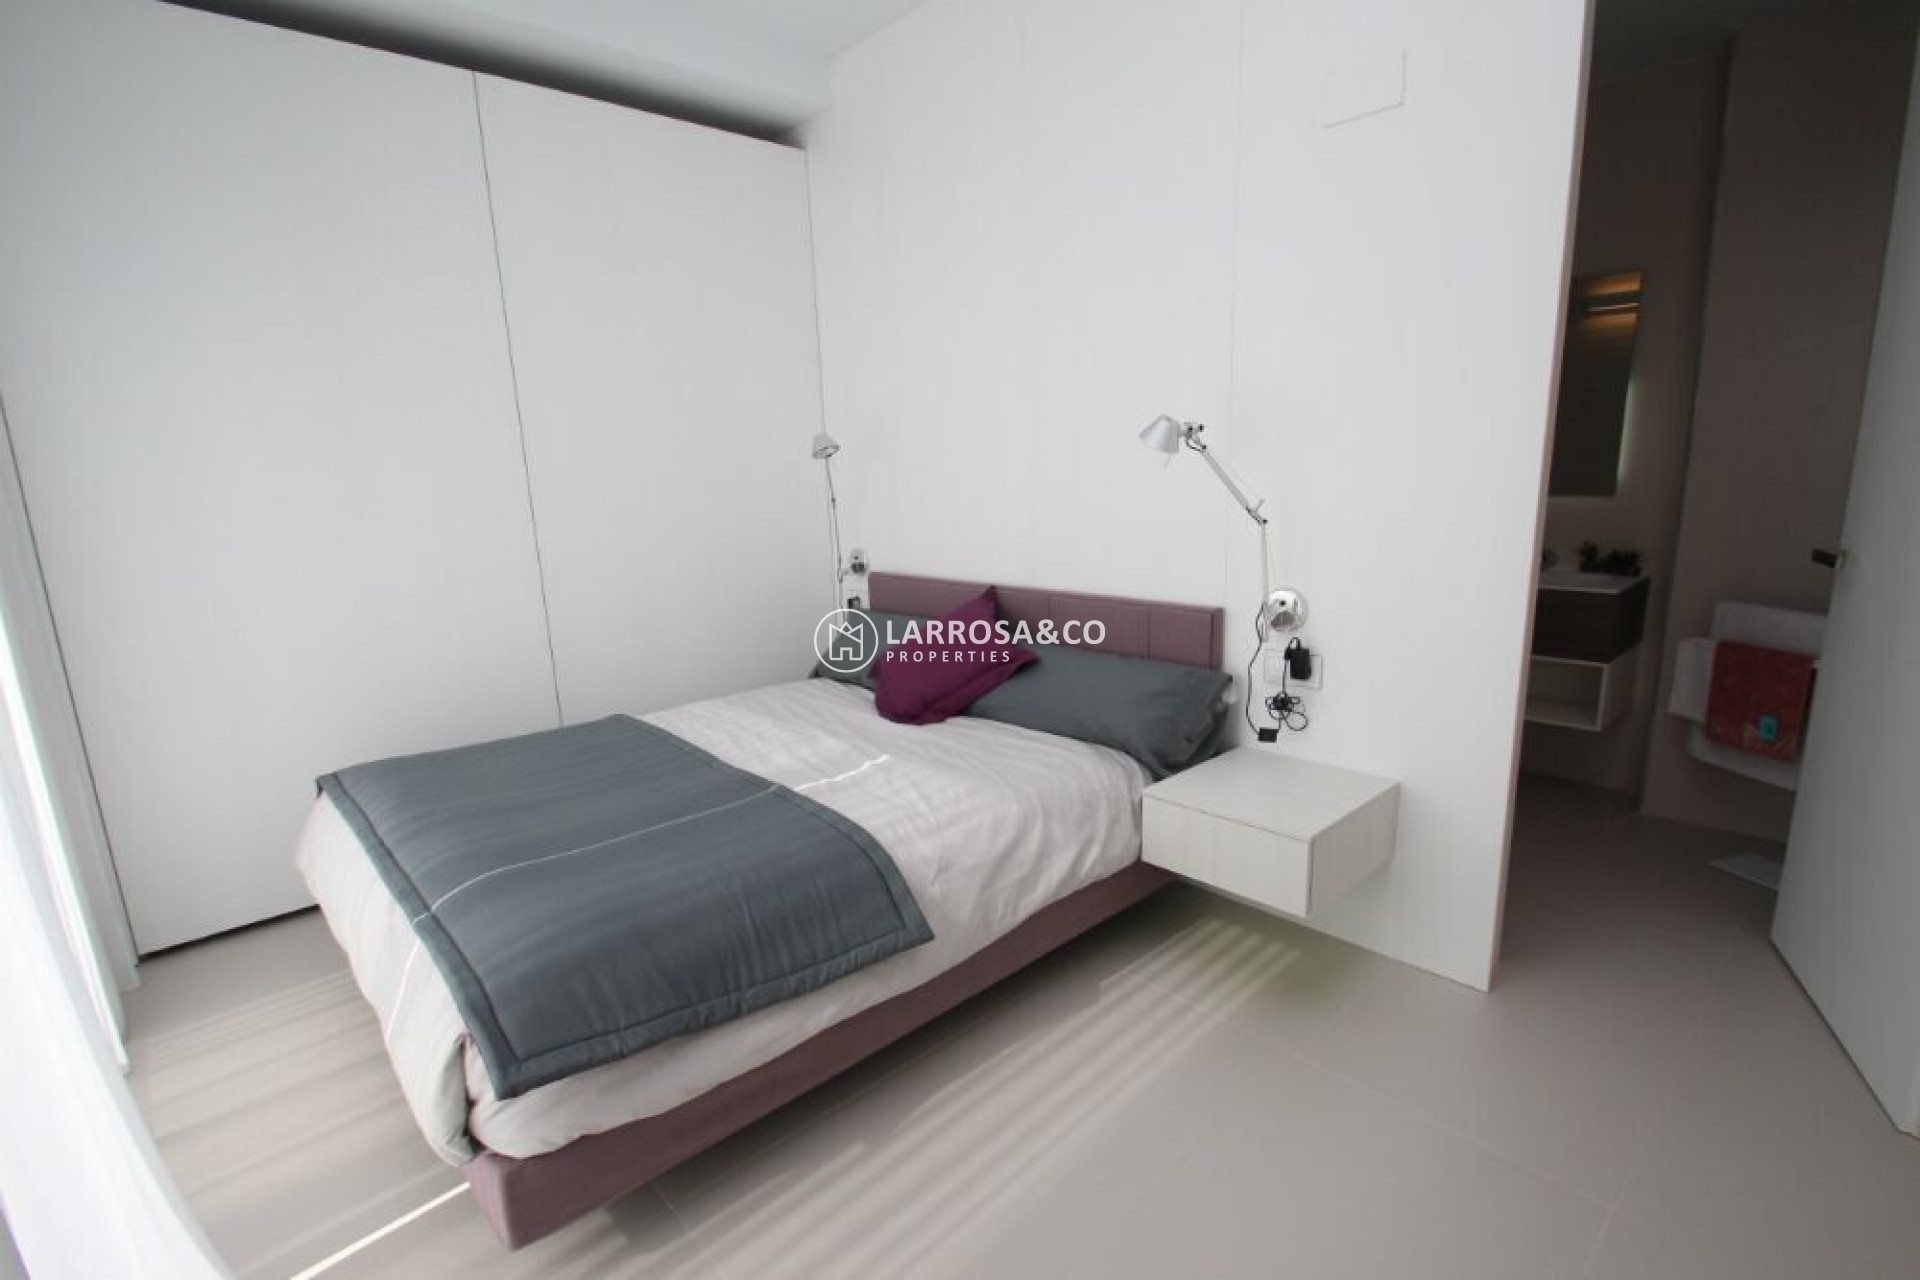 new-build-villa-sanmiguel-bedroom3-on2119